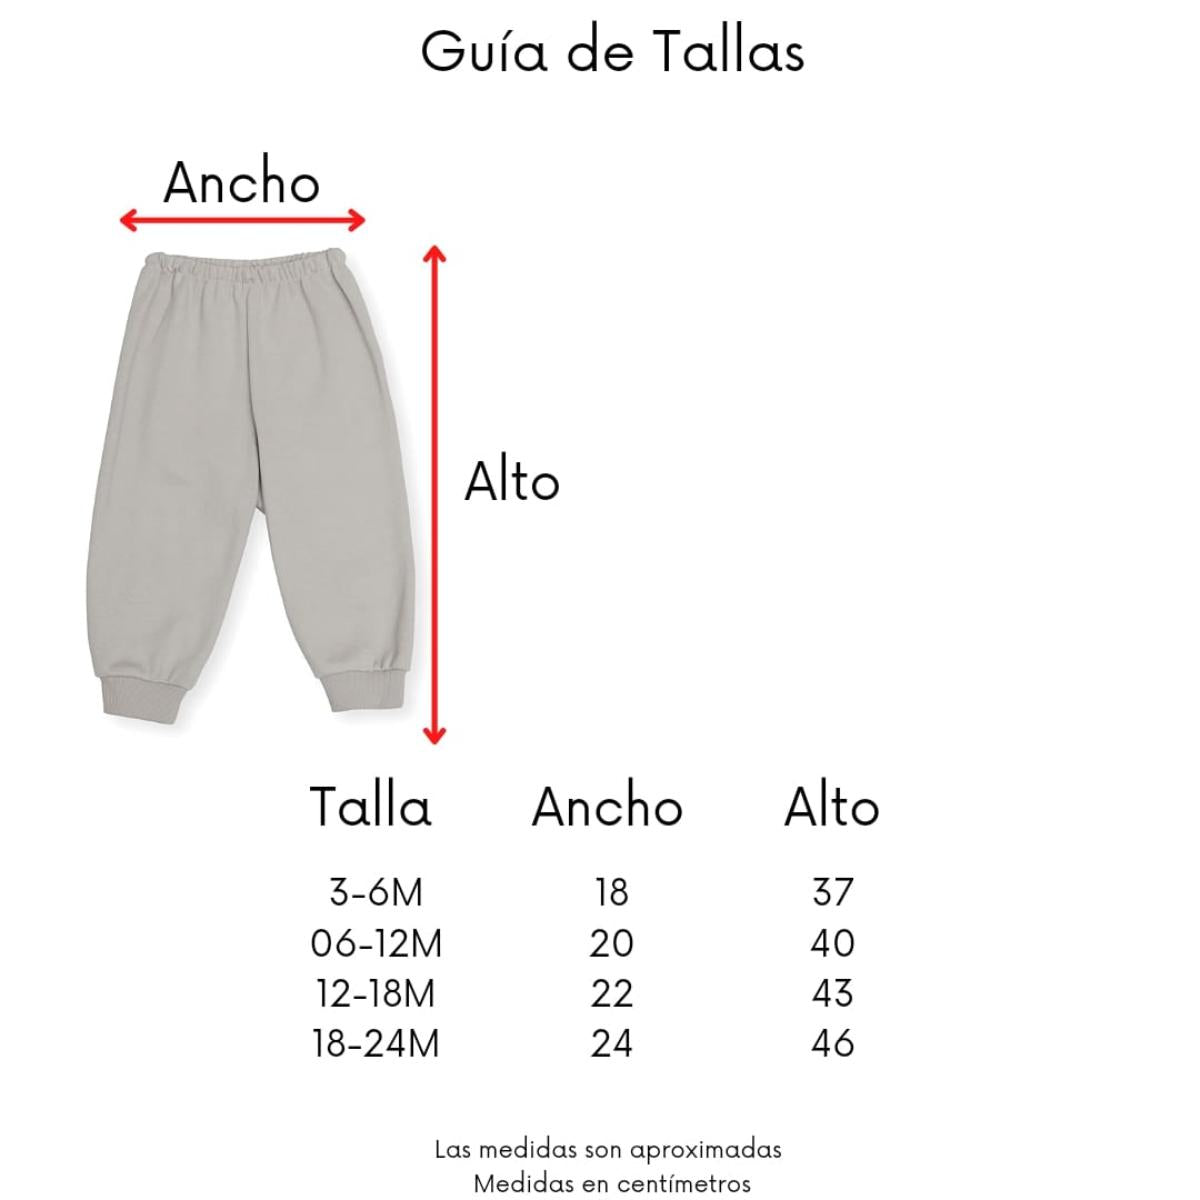 Kit Pants Bebé Niño Selección Nacional México Original